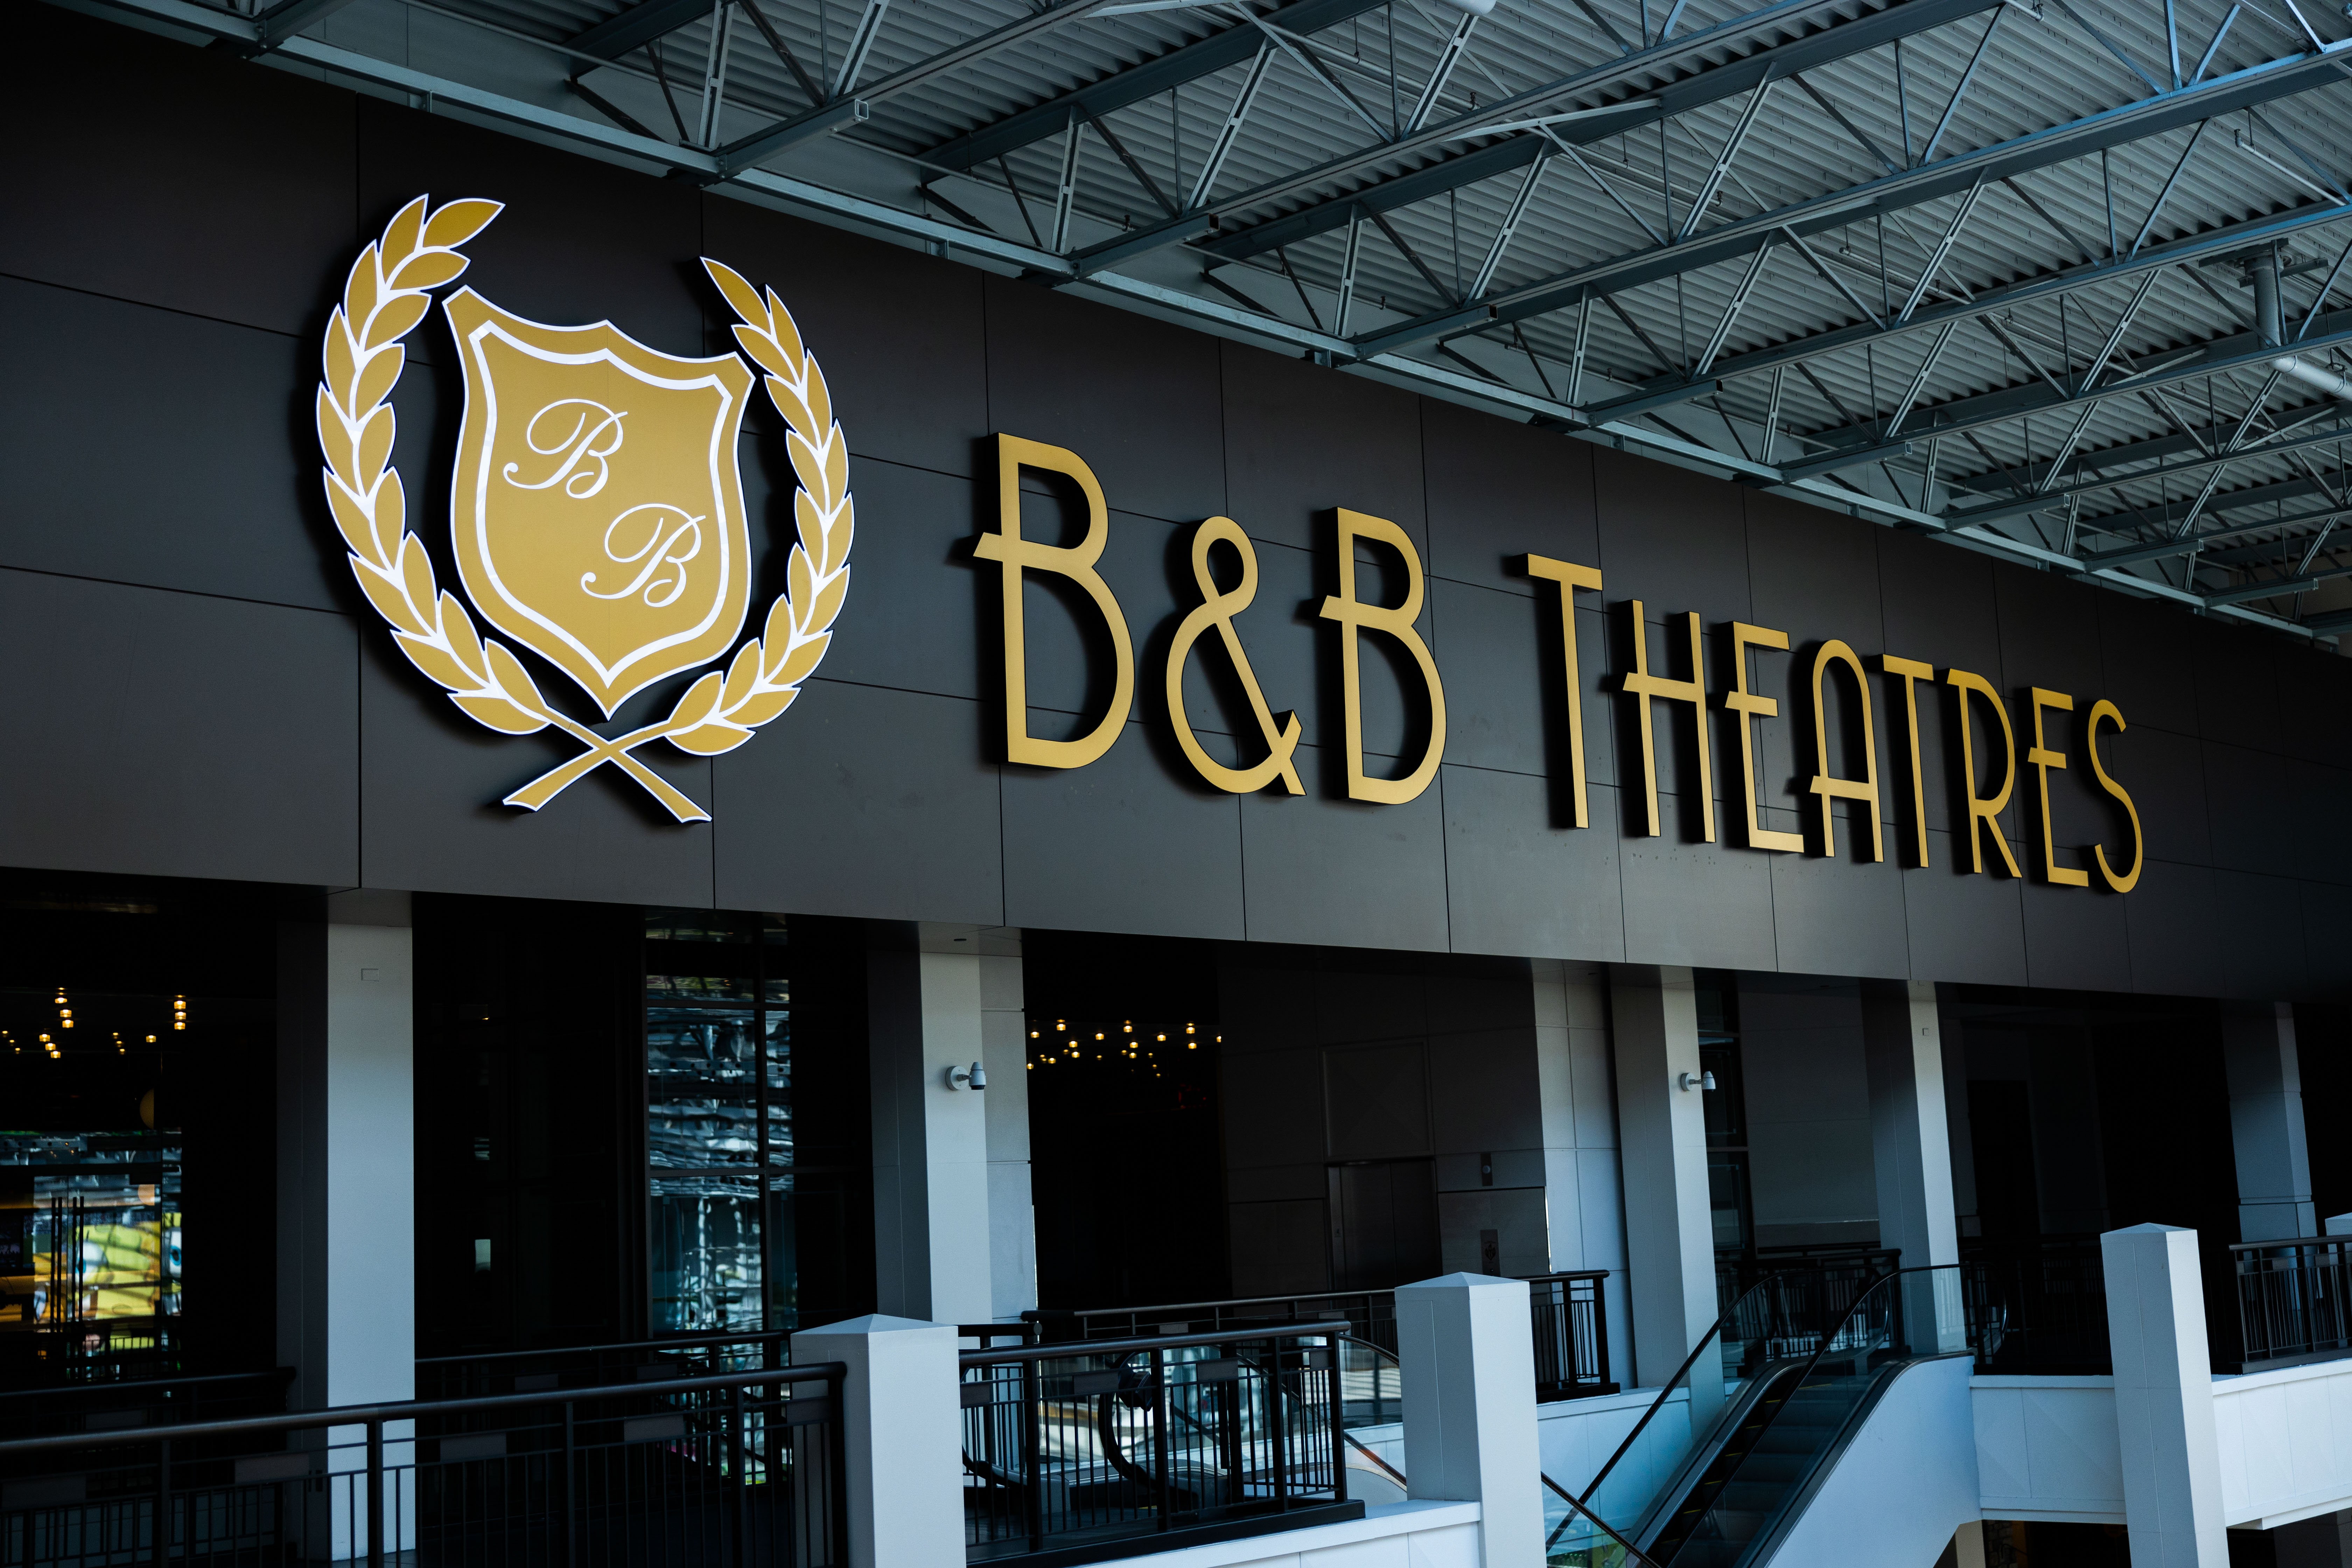 b&b theatres sign at bloomington 13